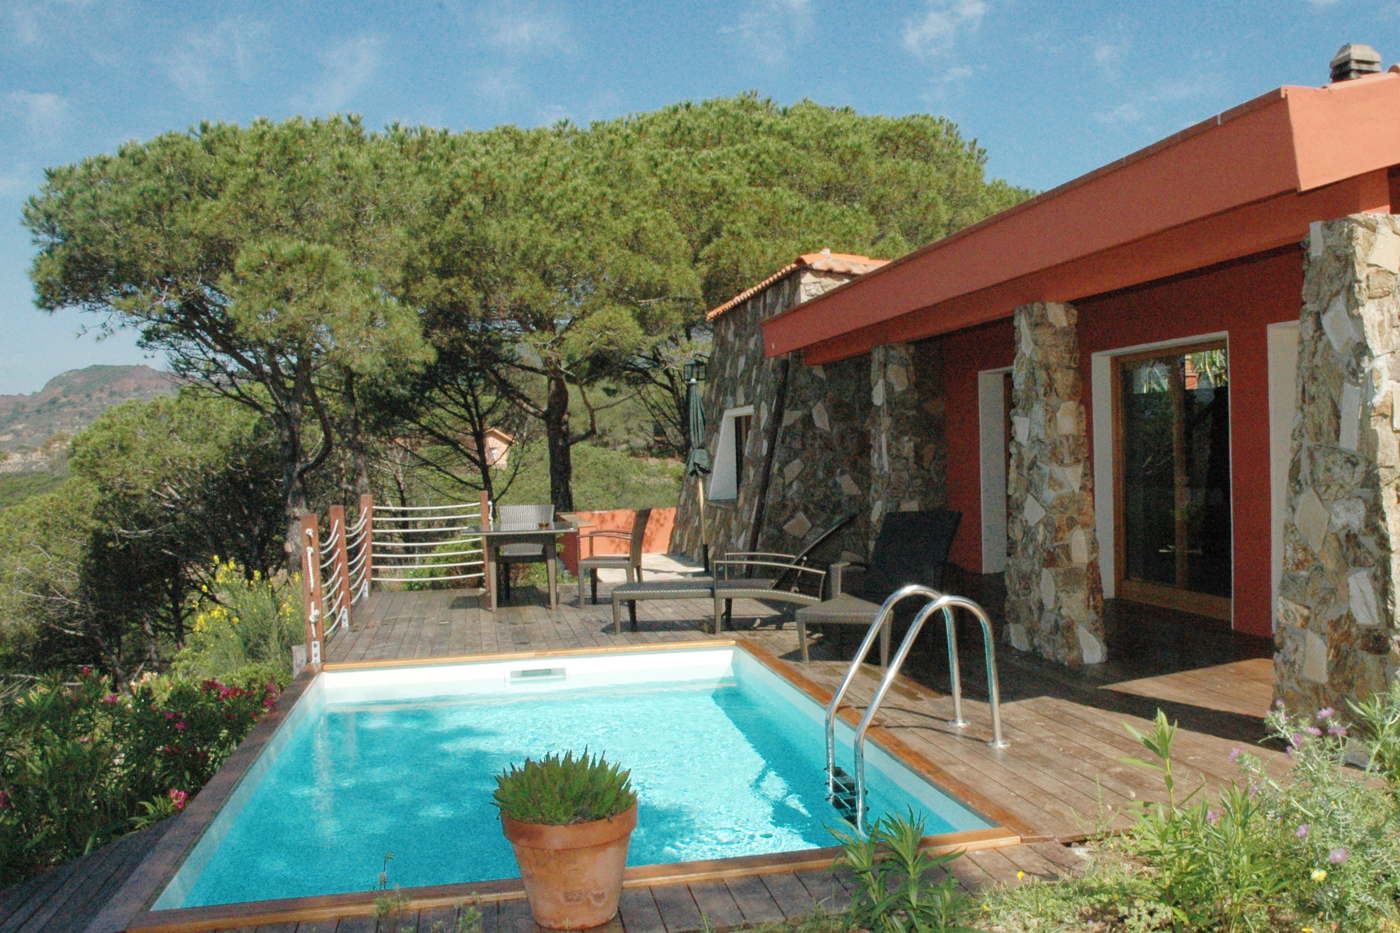 Vacation villa with private pool in Italy Elba Costa dei Gabbiani